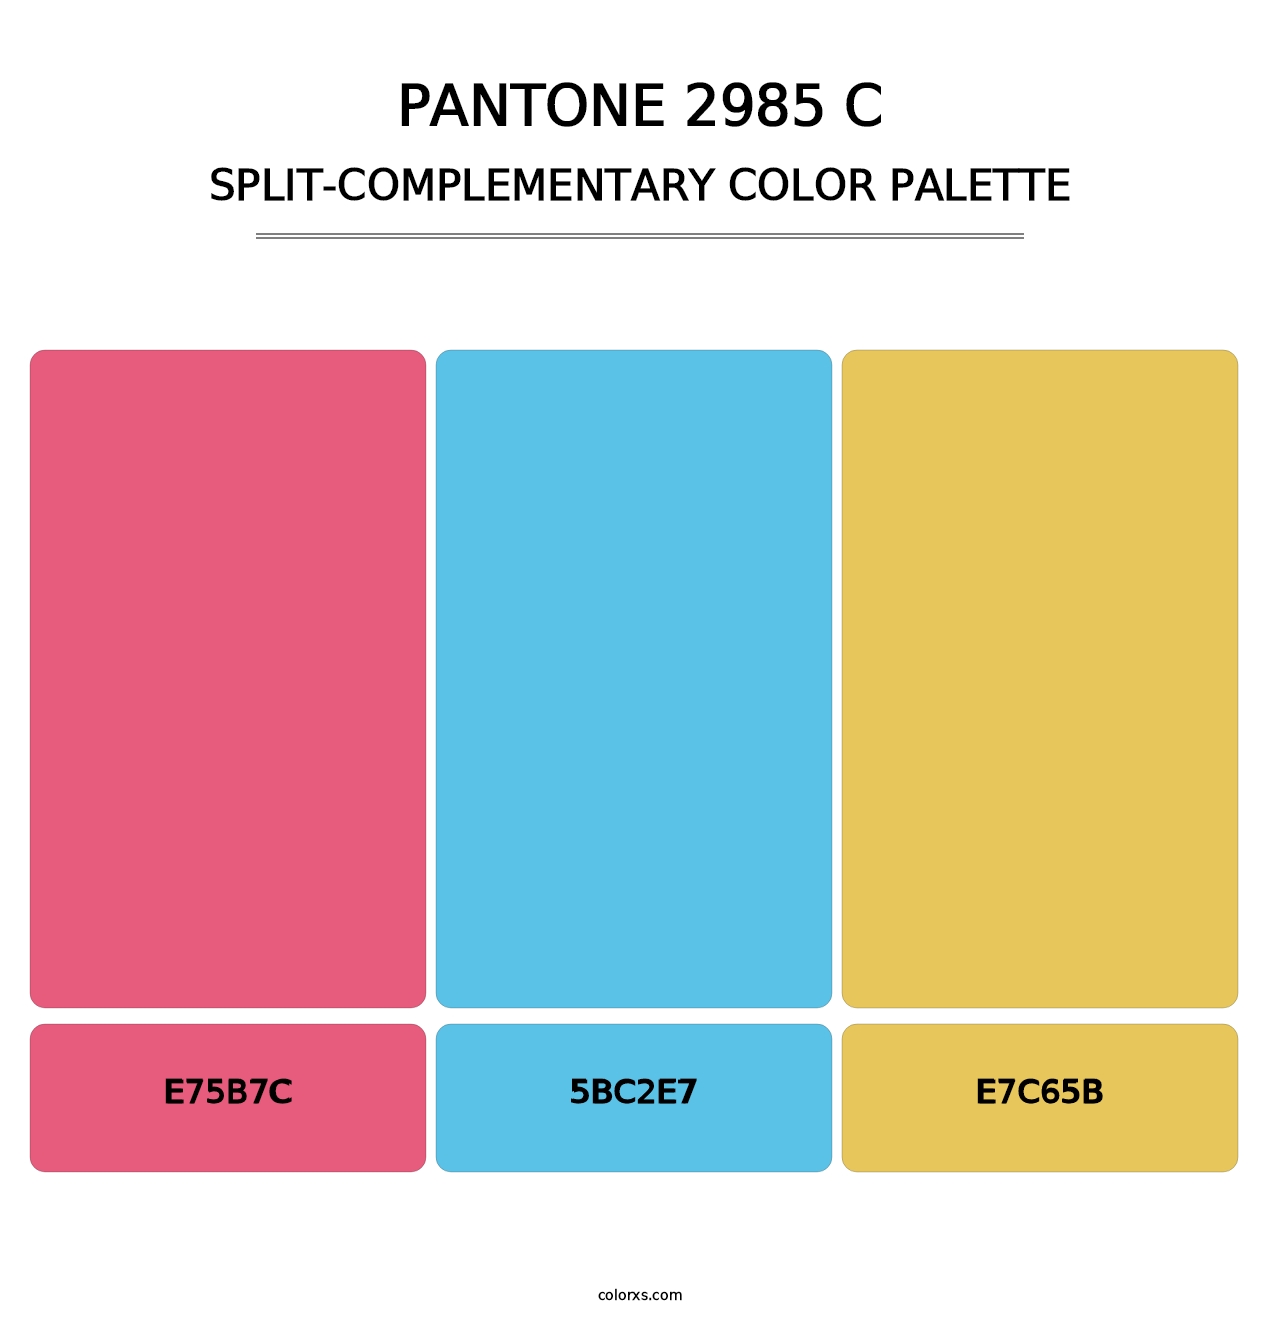 PANTONE 2985 C - Split-Complementary Color Palette